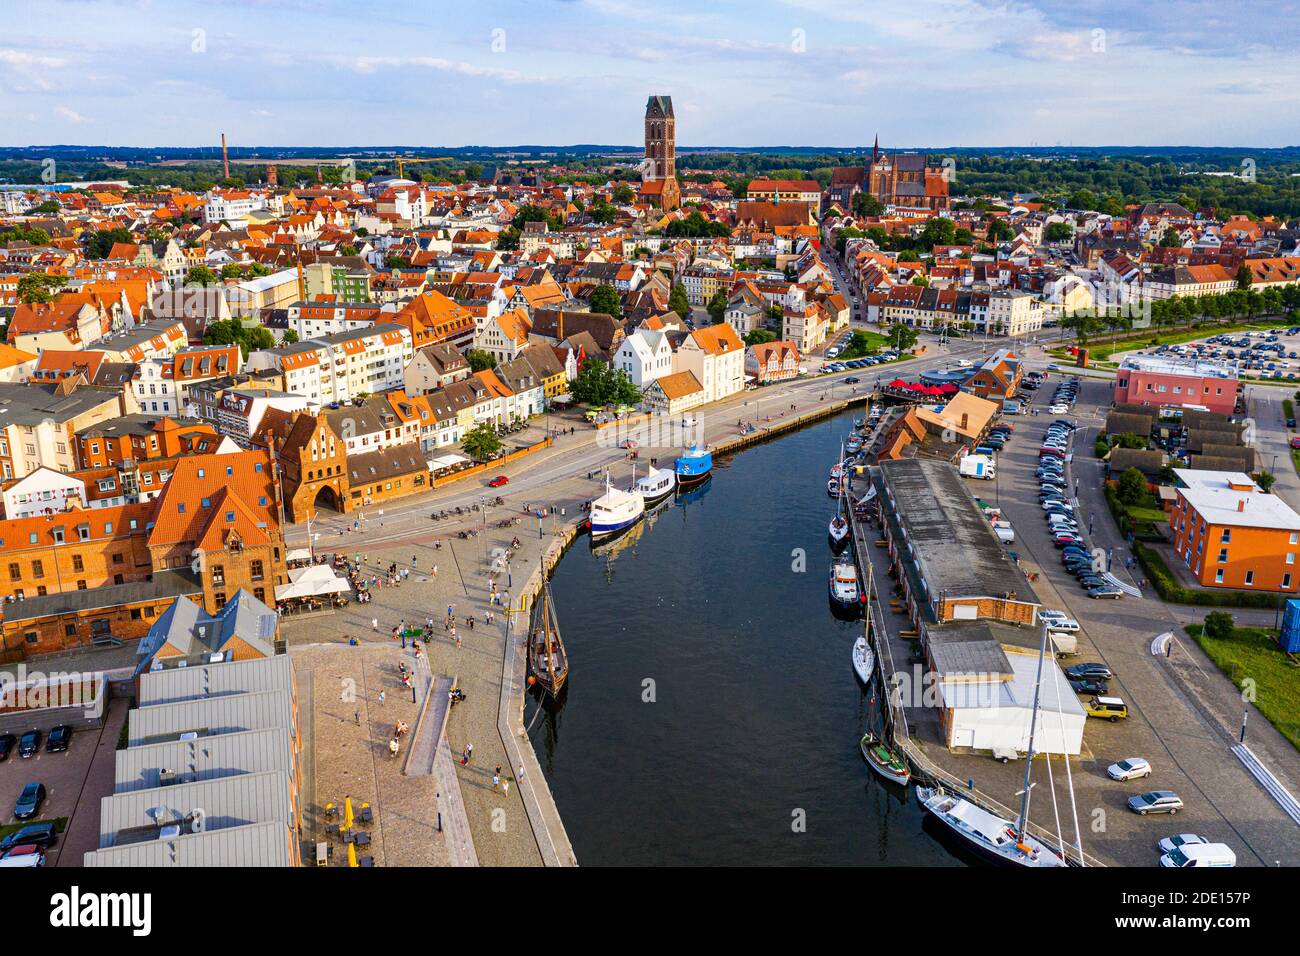 Aereo della città anseatica di Wismar, patrimonio dell'umanità dell'UNESCO, Meclemburgo-Vorpommern, Germania, Europa Foto Stock